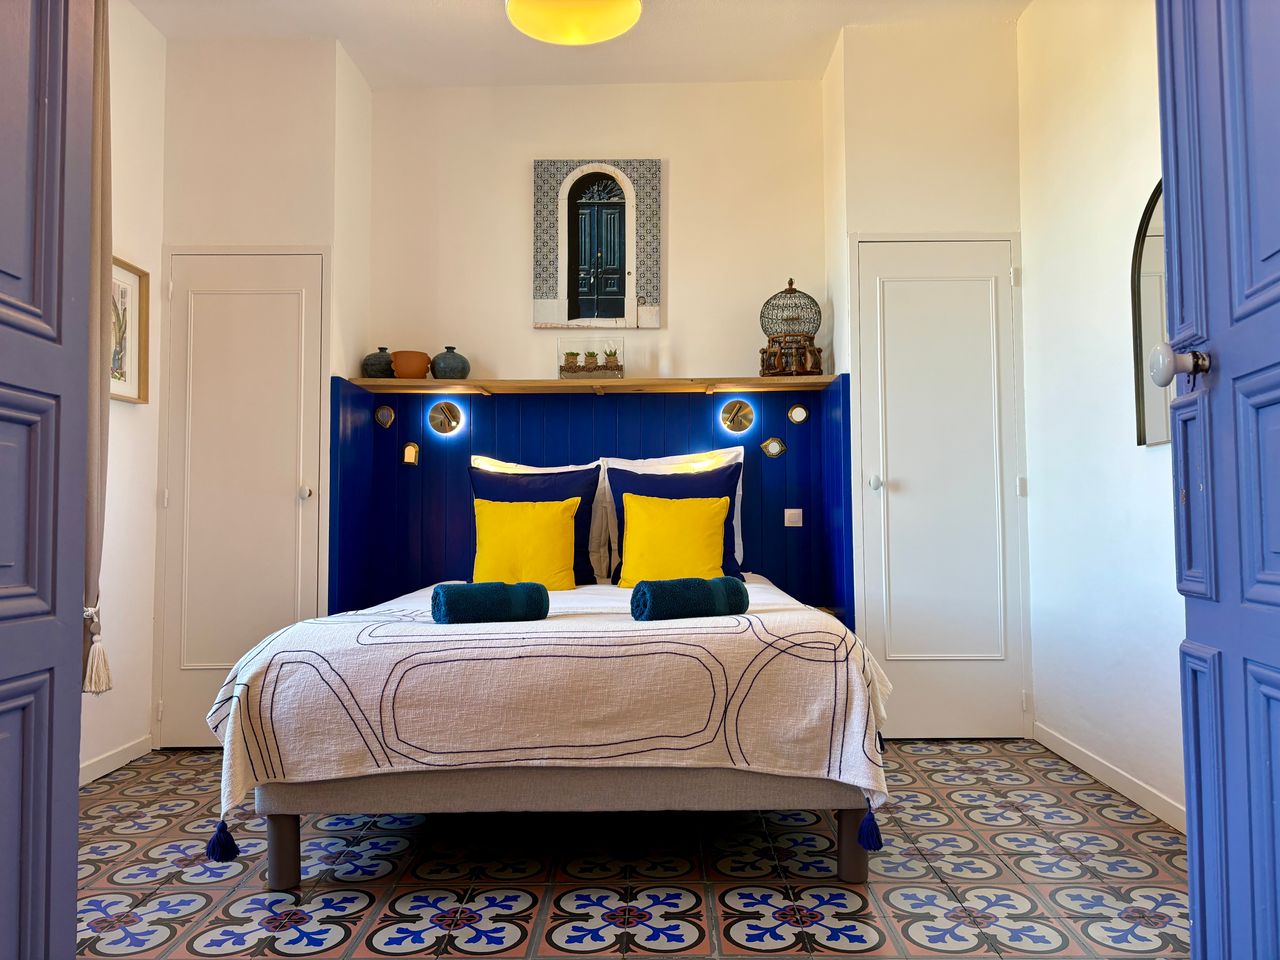 Intérieur d'une chambre, les draps du lit sont bleus, un tableau représentatn des fleurs est accroché au mur